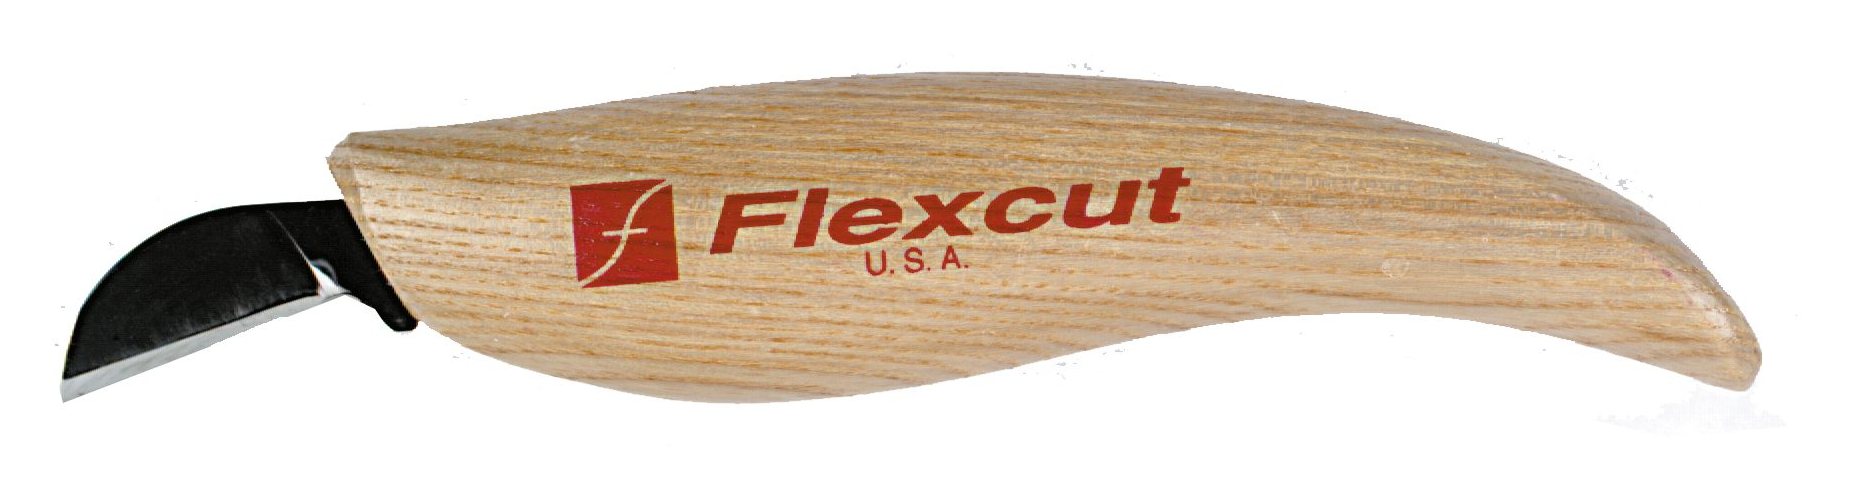 Flexcut KN15 Chip Carving 